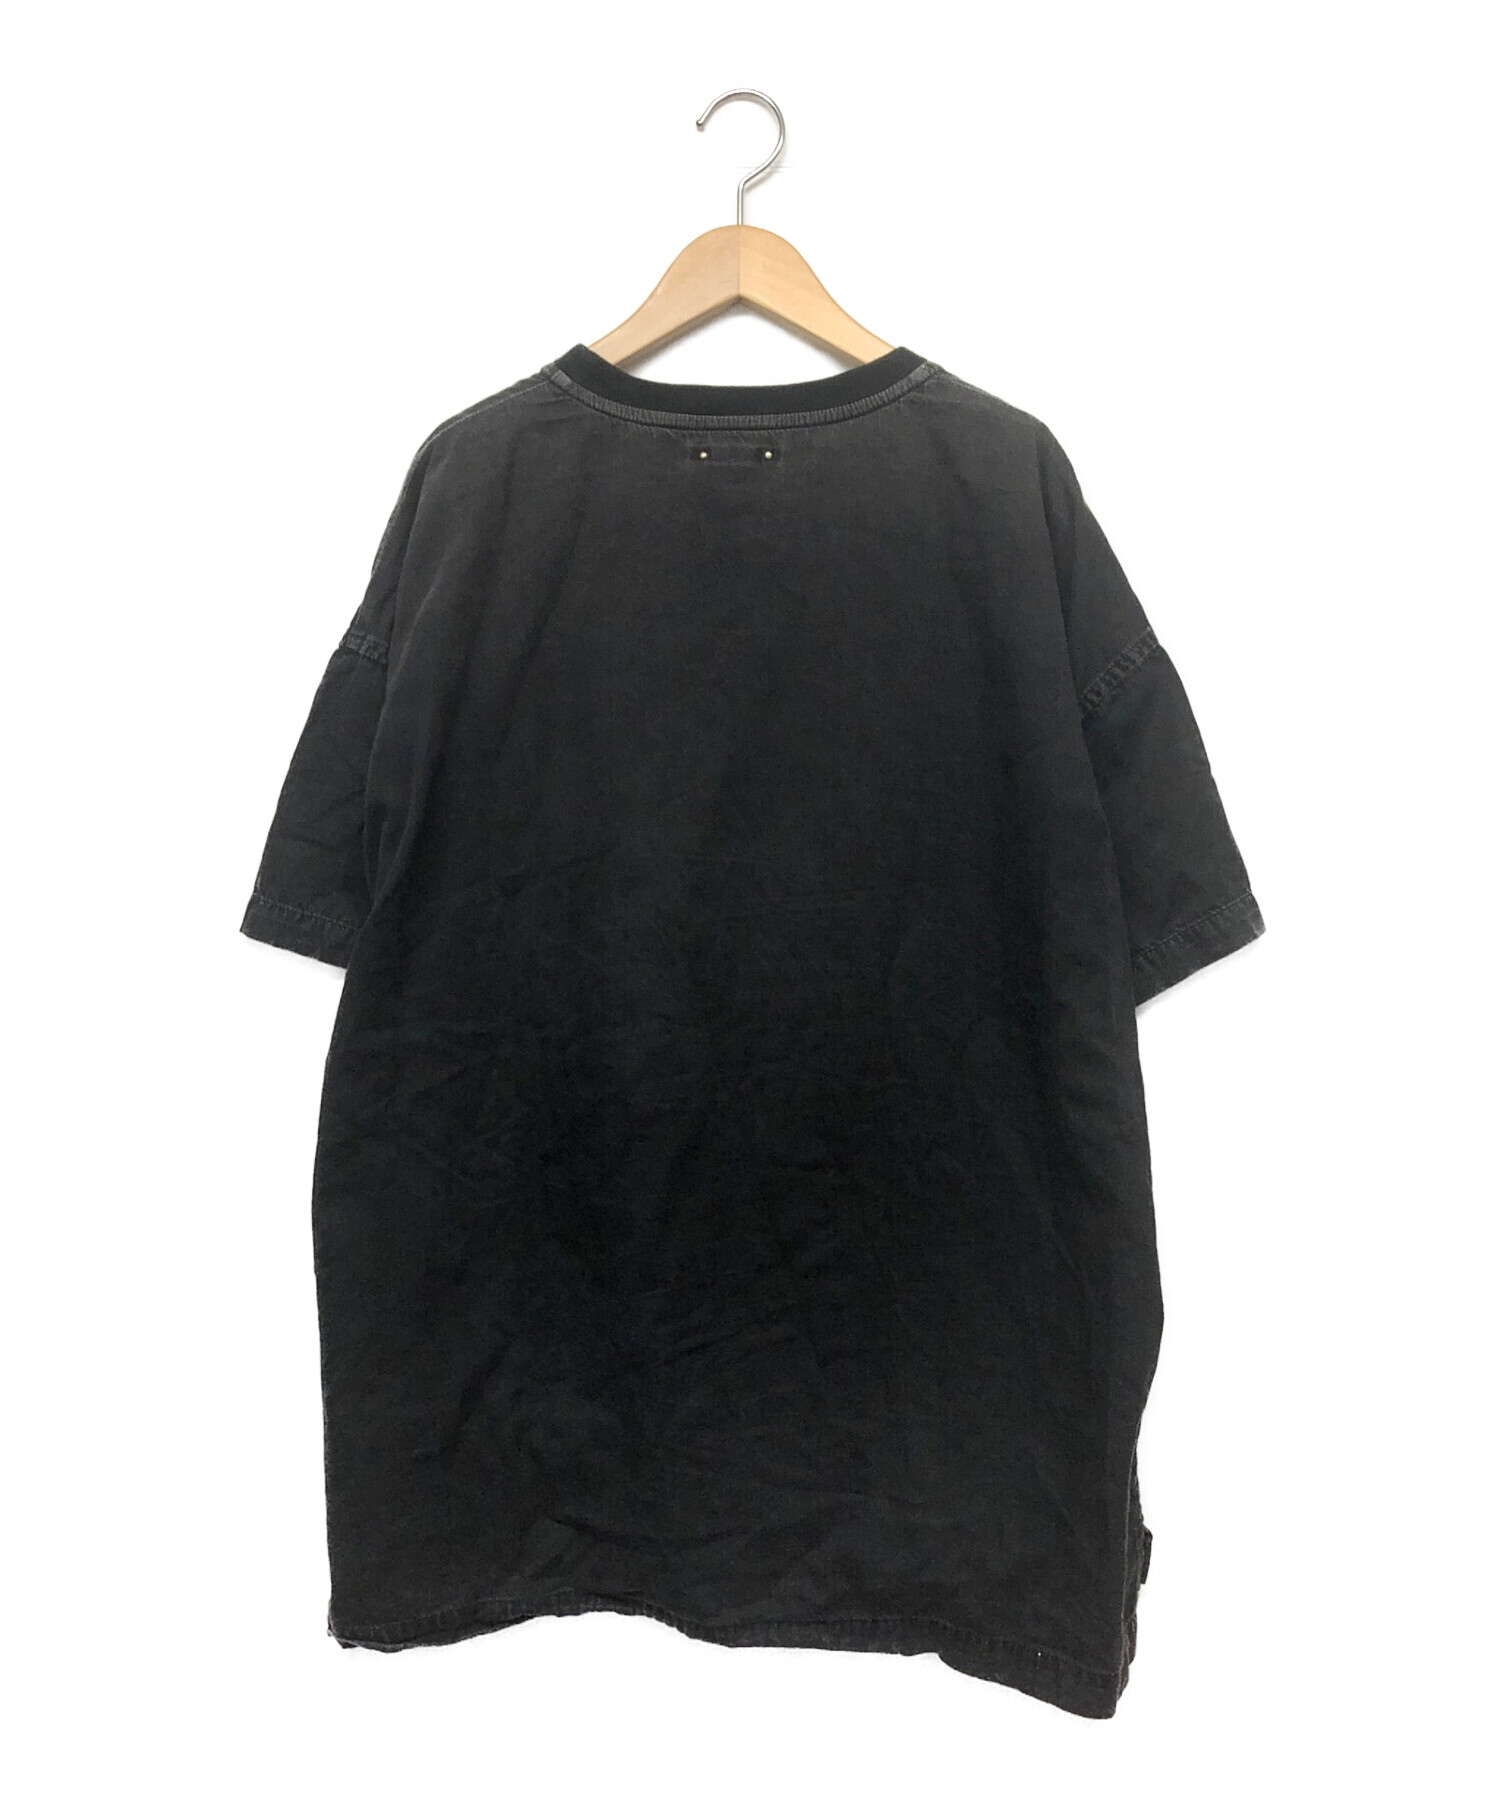 MINEDENIM (マインデニム) 半袖Tシャツ ブラック サイズ:不明